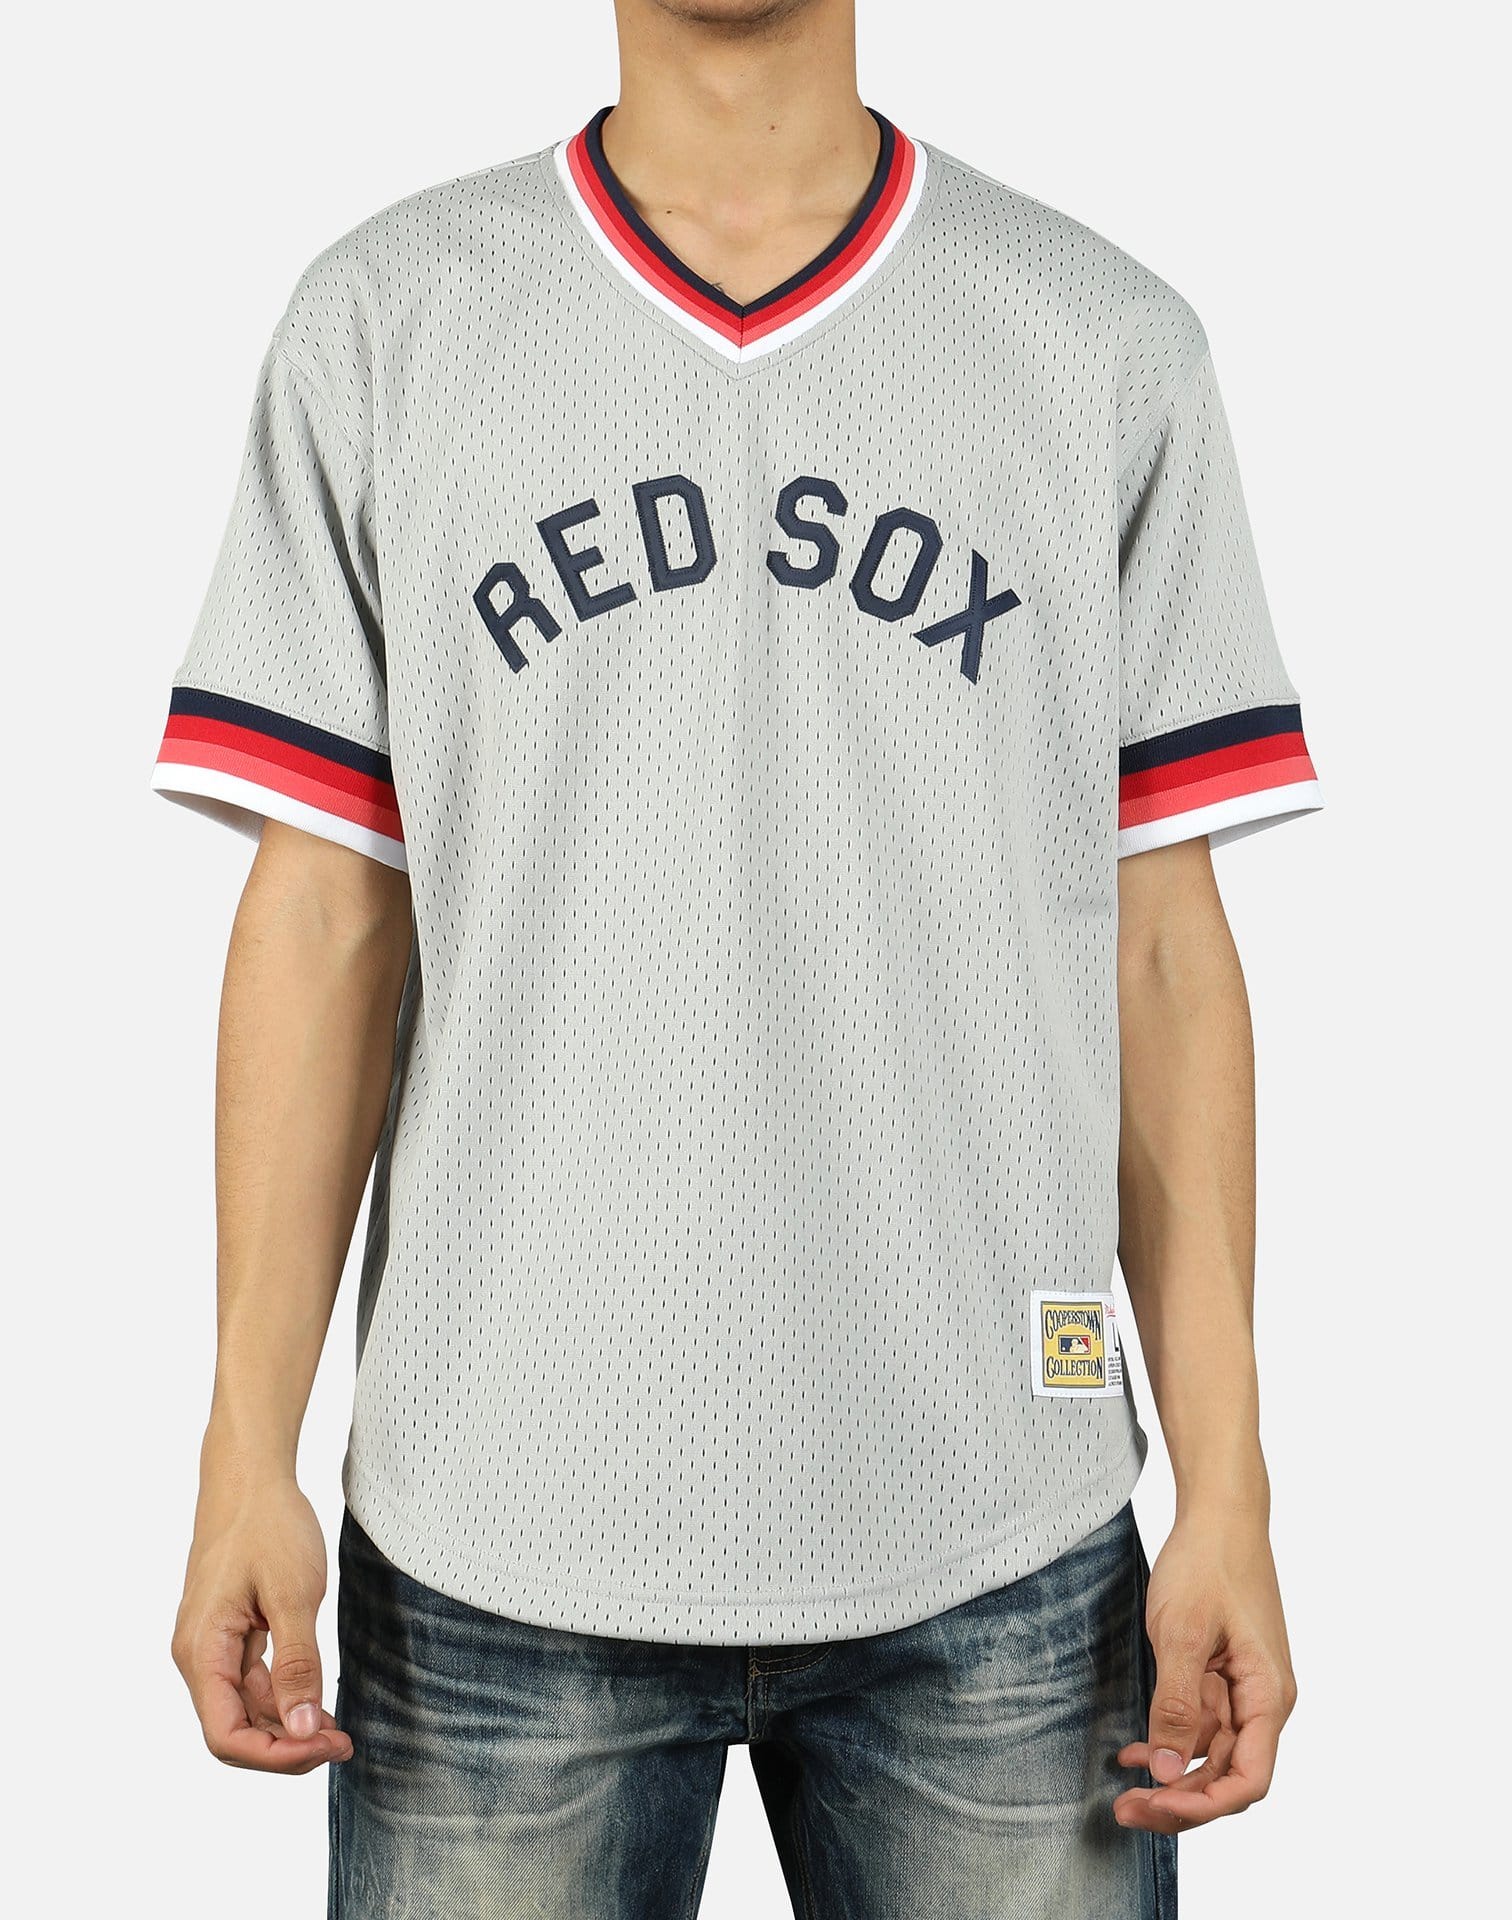 Mitchell & Ness Men's MLB Boston Red Sox Mesh V-Neck Jersey